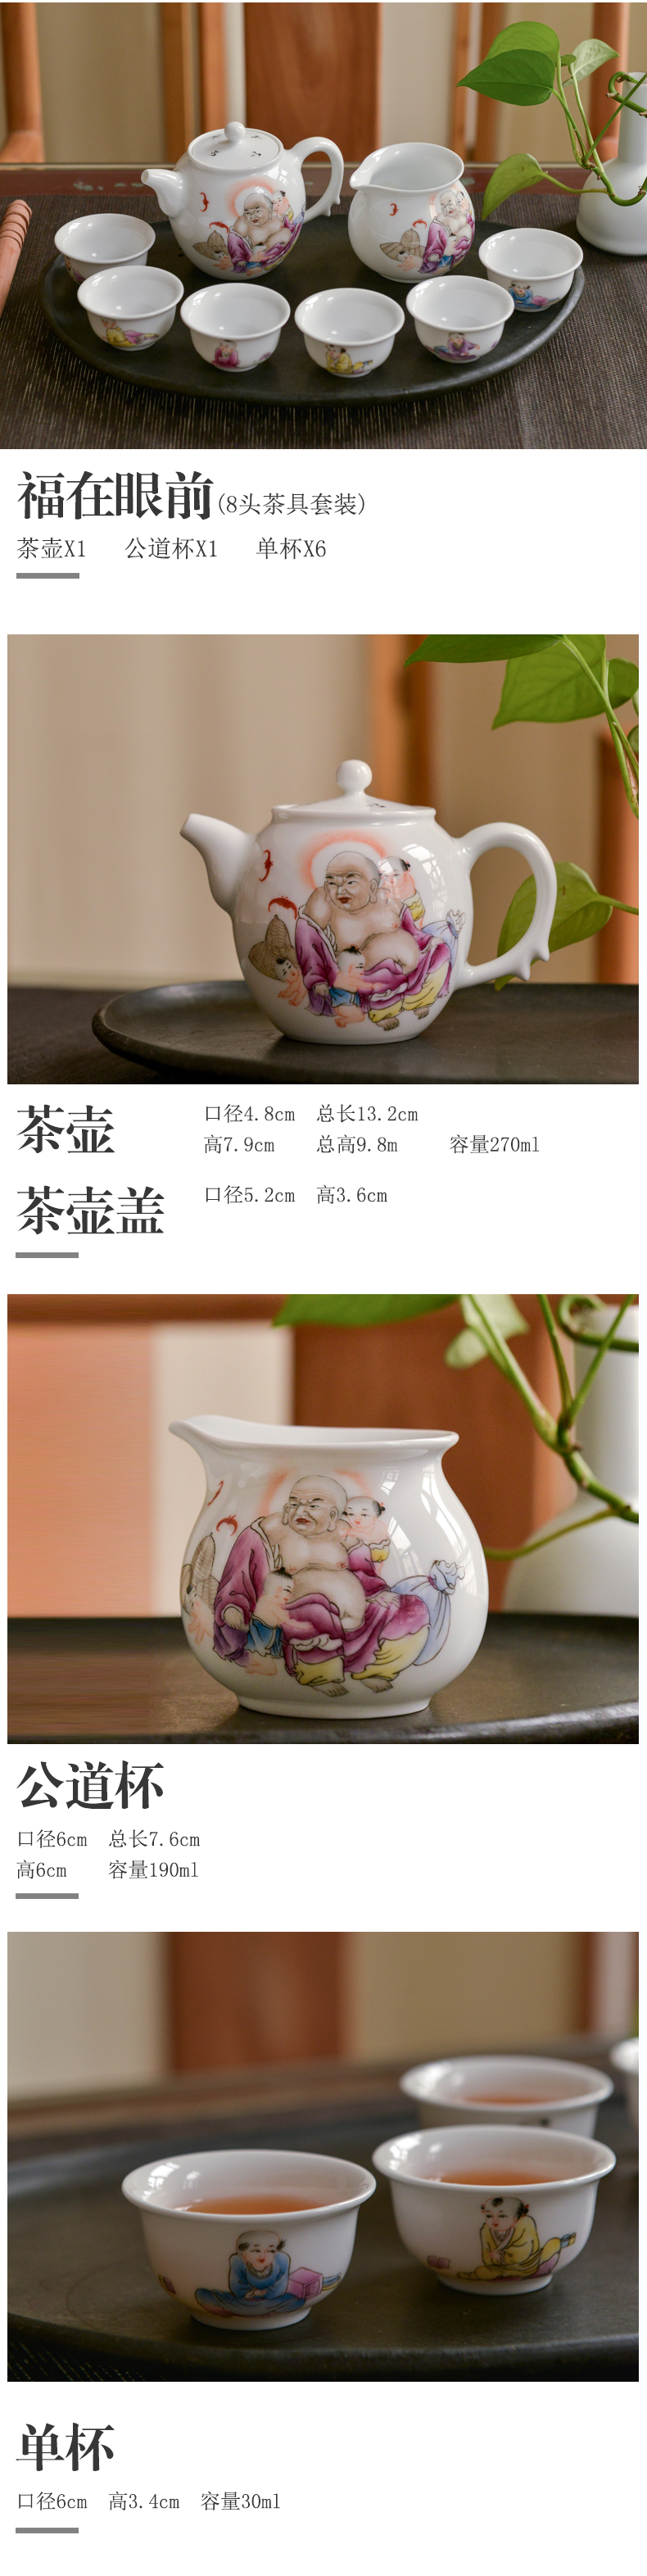 手尚功夫景德镇手绘陶瓷茶具套装家用青花瓷手绘功夫茶具白瓷茶具古镇陶瓷 福在眼前